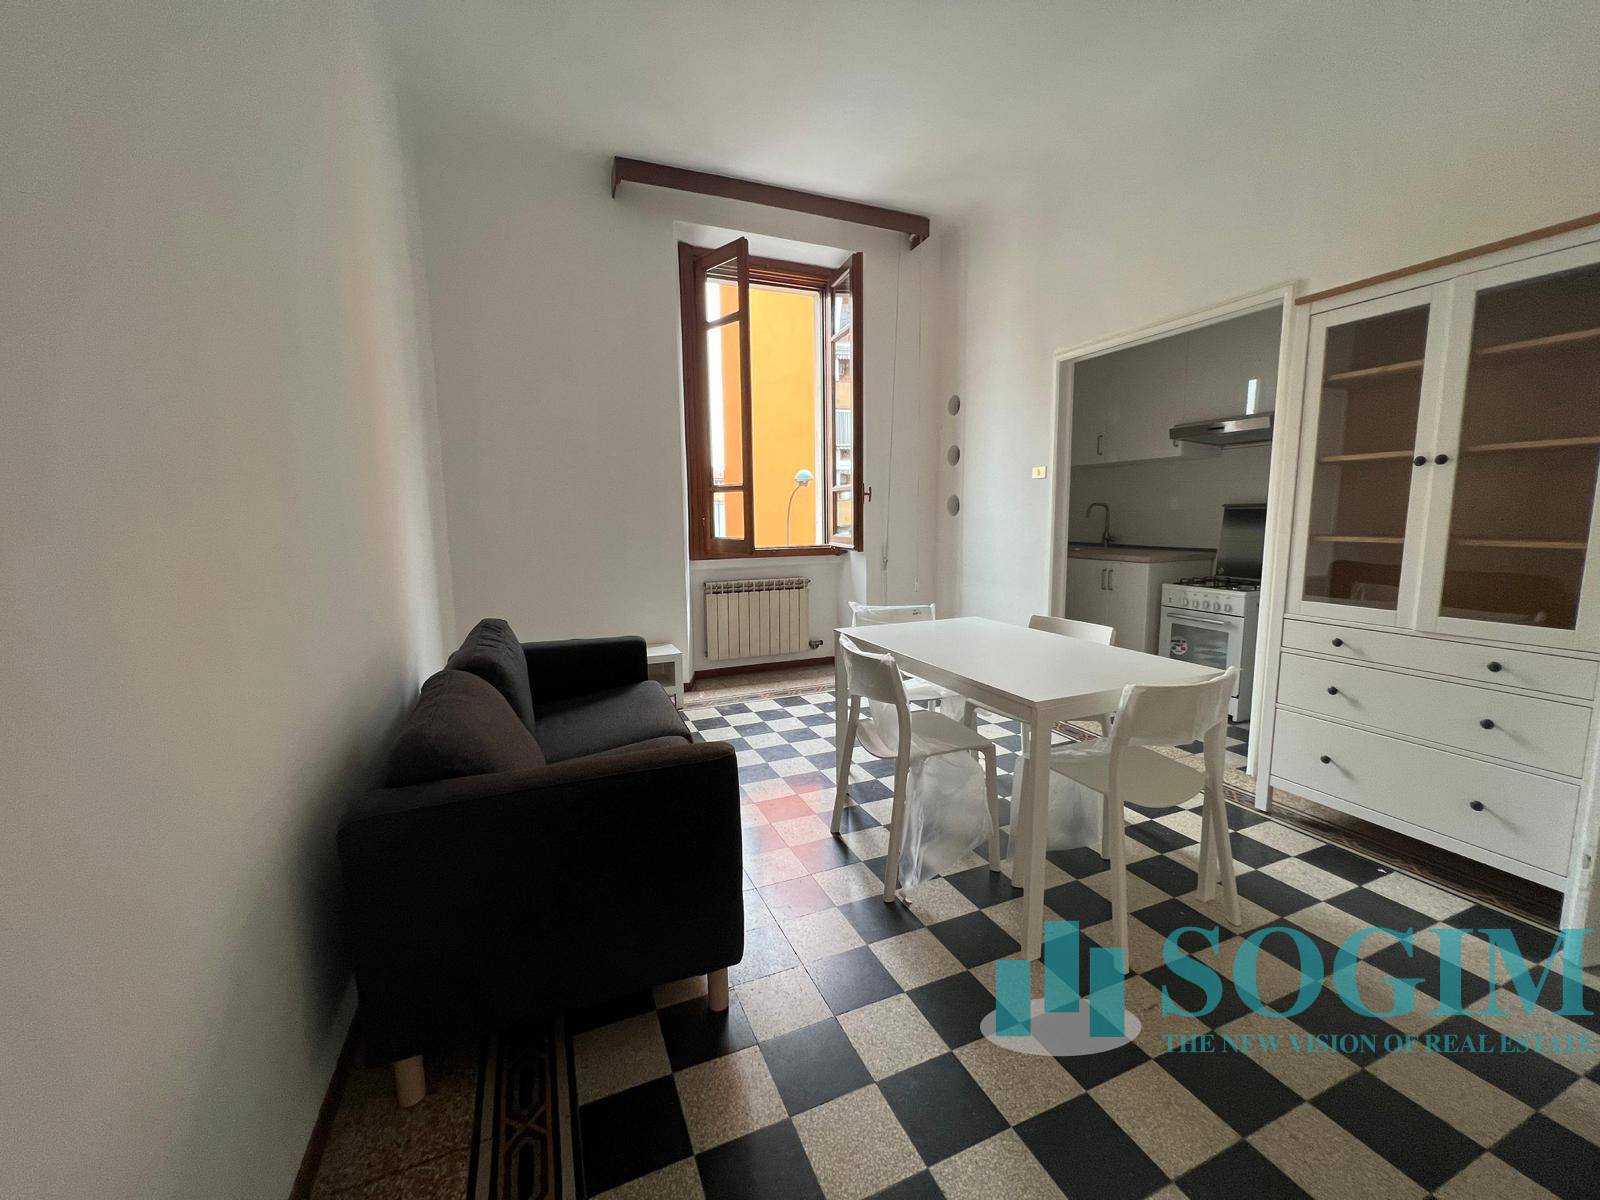 Appartamento in affitto a Sesto San Giovanni, 2 locali, prezzo € 750 | CambioCasa.it